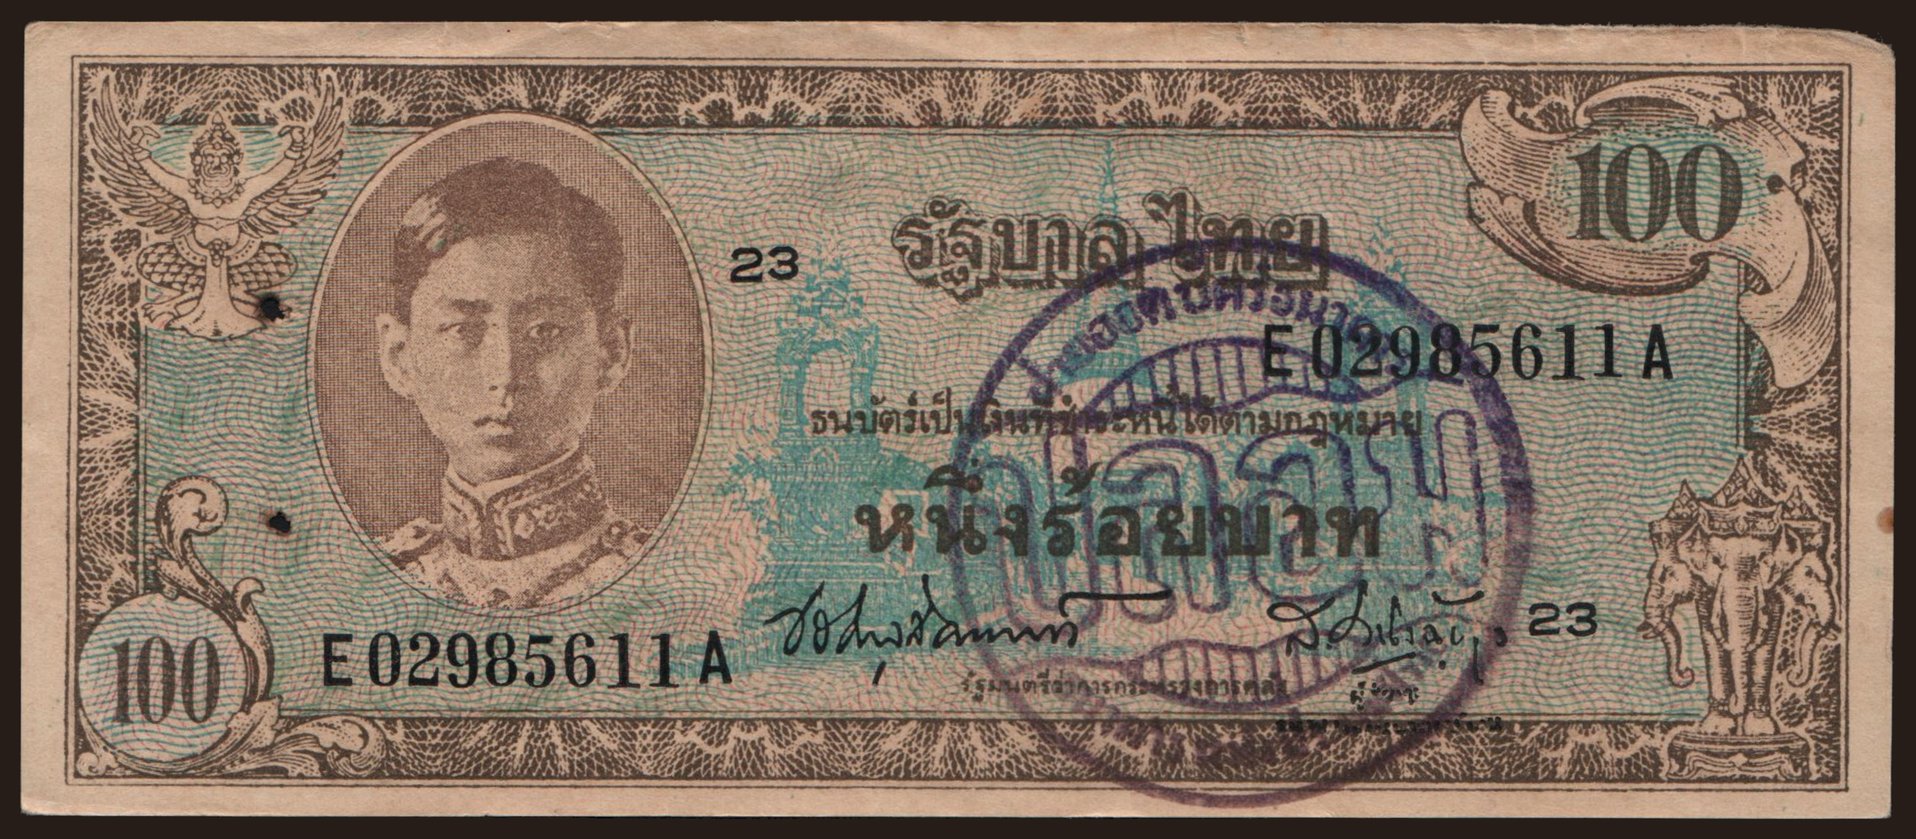 100 baht, 1946, falsum